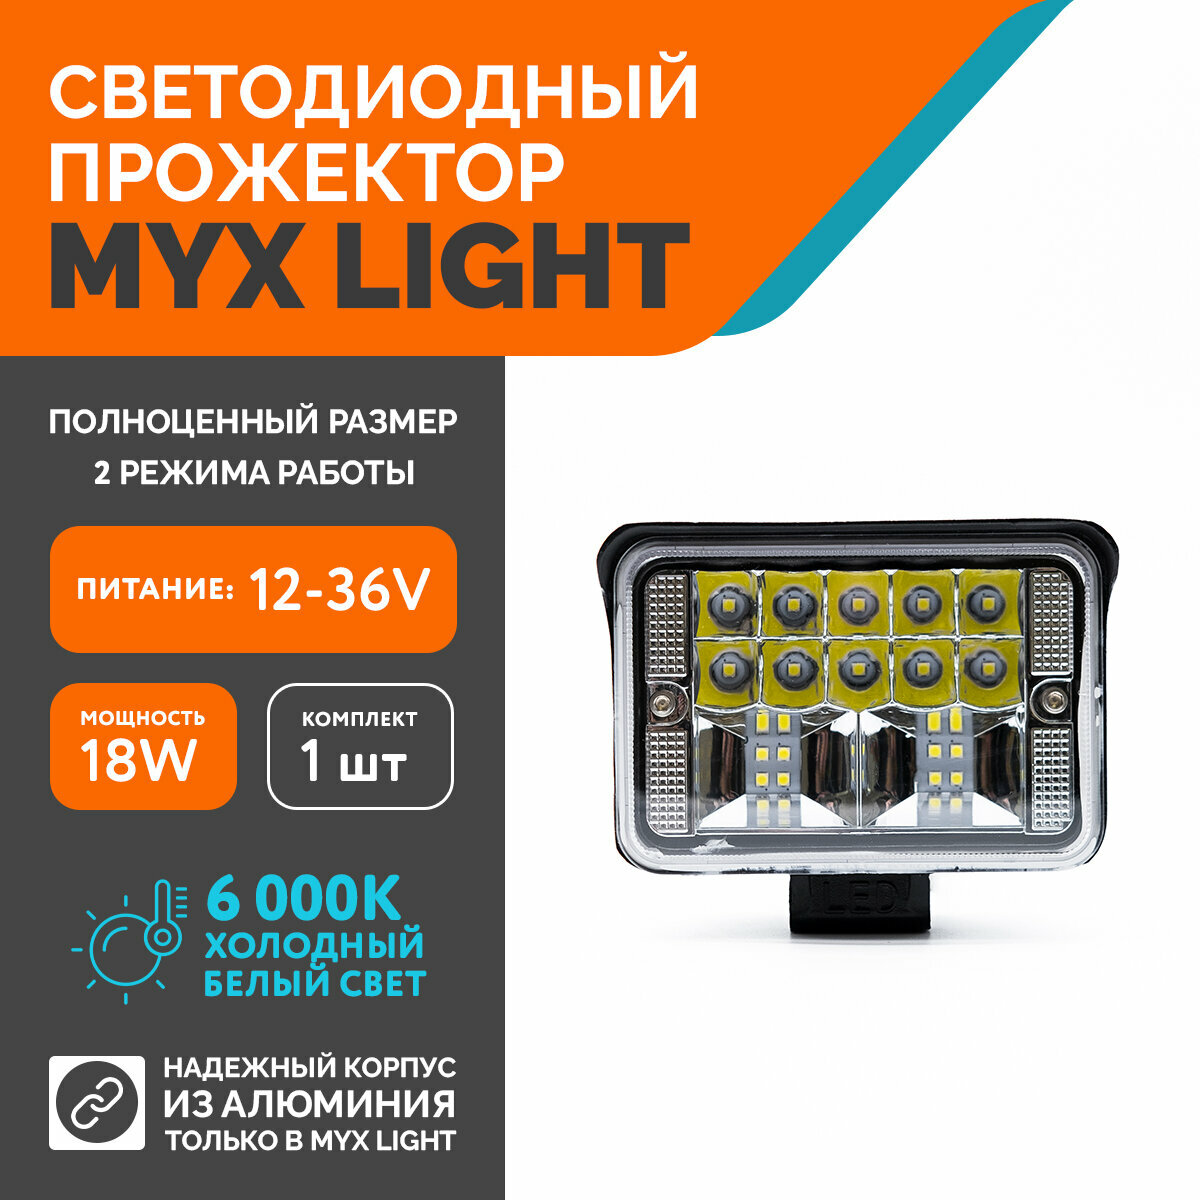 Светодиодная противотуманная фара для авто MYX-Light 12-36V мощность 18W 6000K прожектор дневные ходовые огни для легковых и грузовых авто джипов квадроциклов 1шт